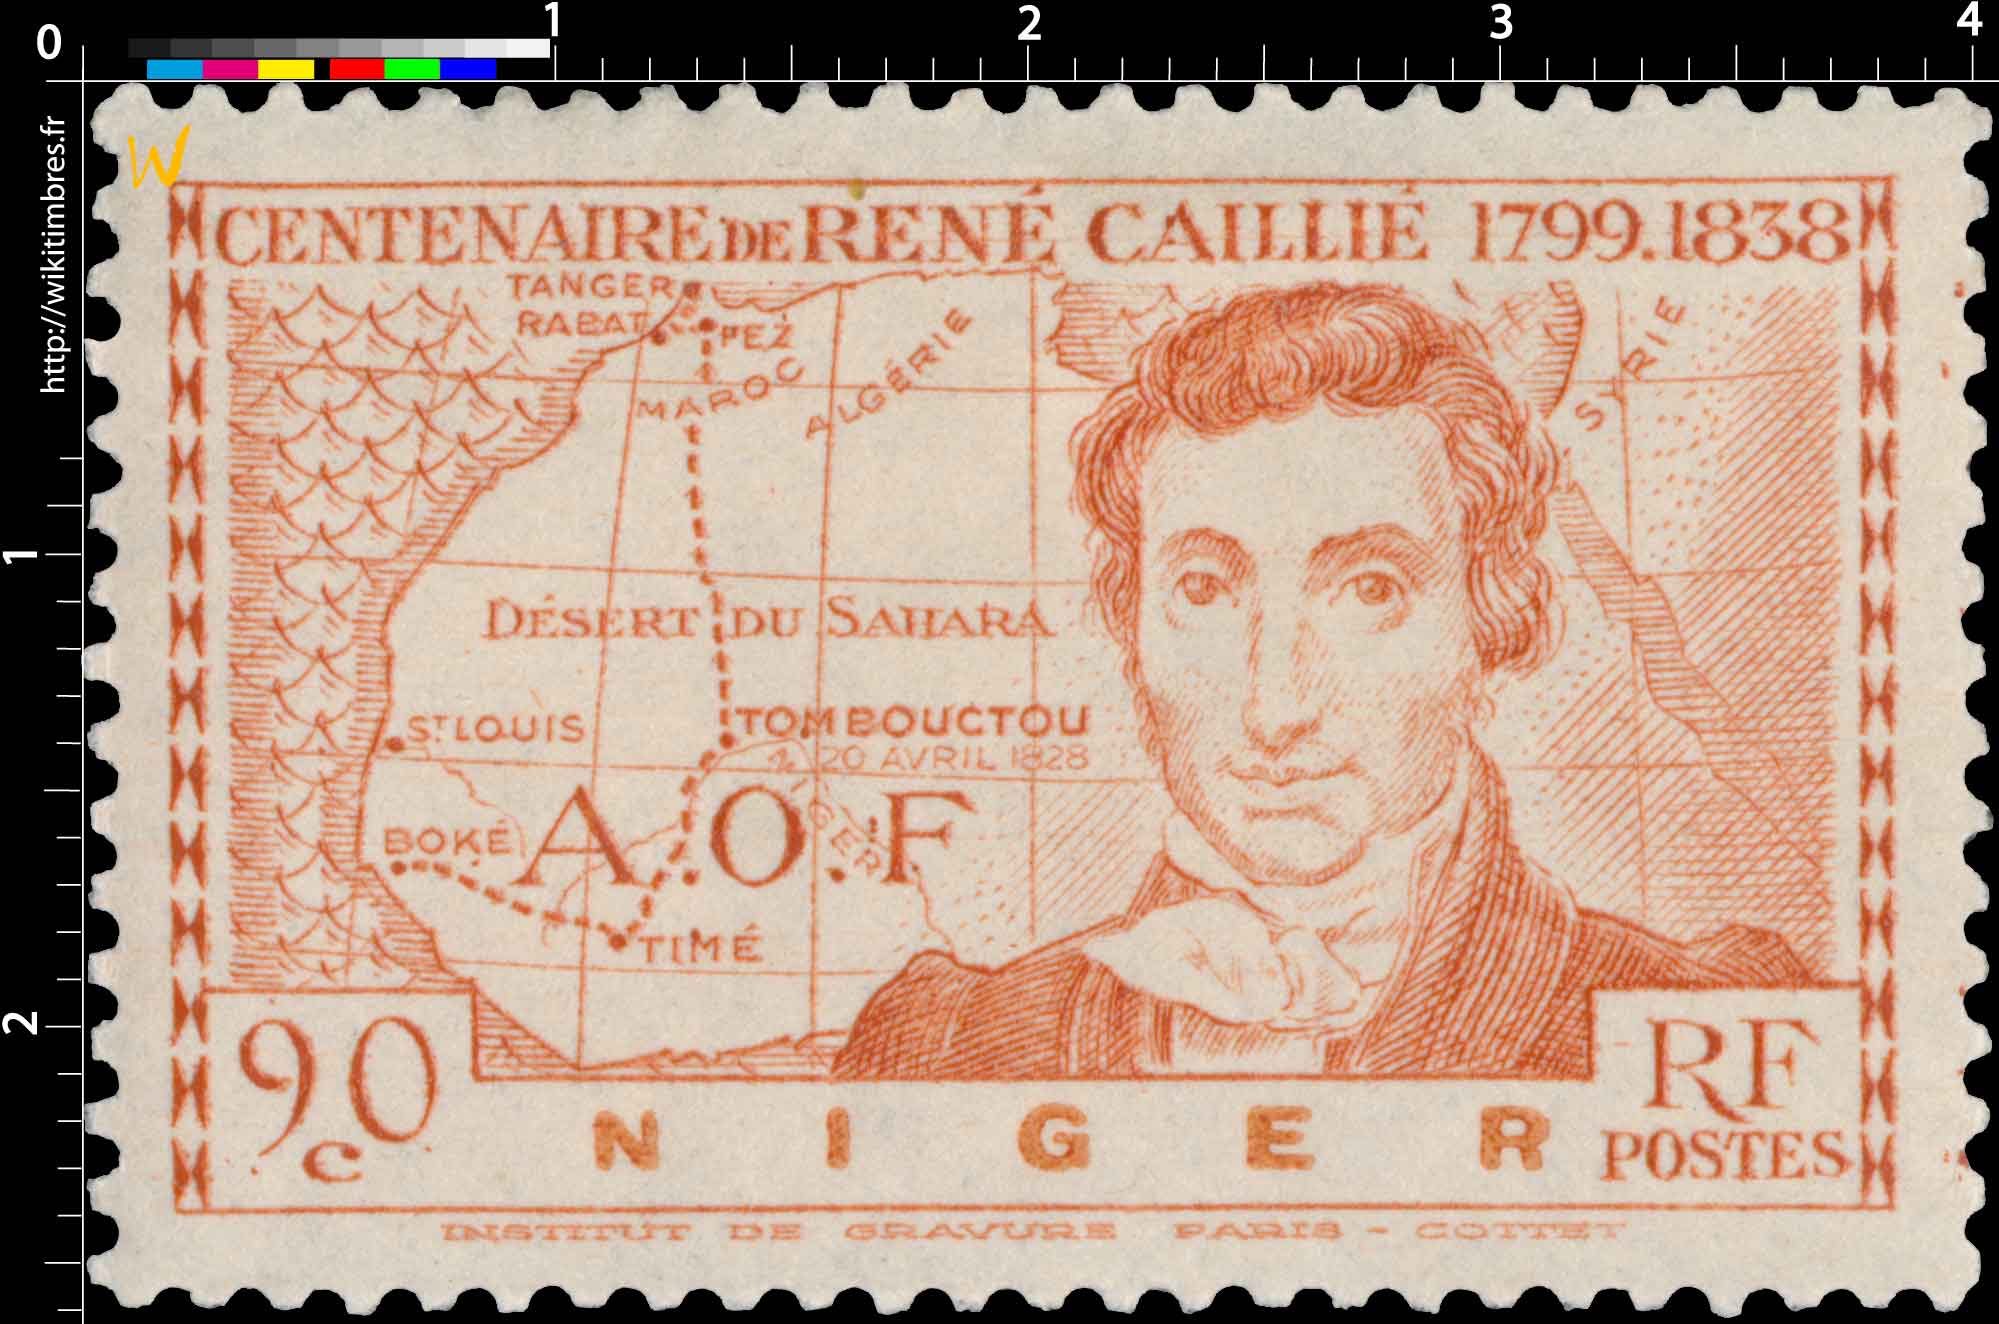 AOF Niger centenaire de René Caillié 1799 - 1838